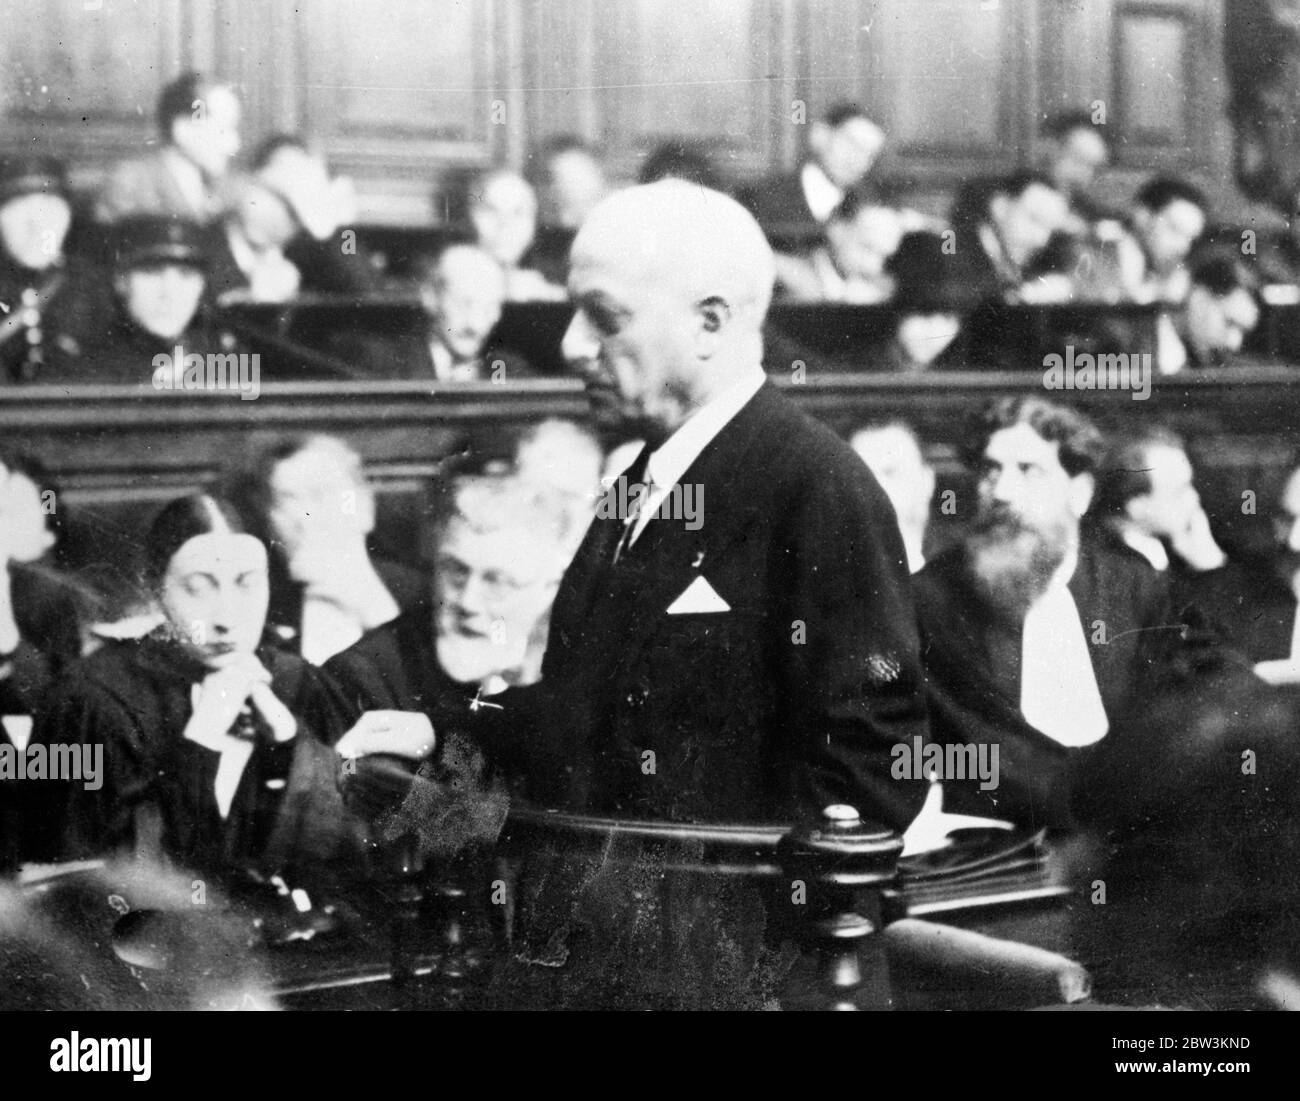 M Chiappe , ancien chef de police de Paris , présente des preuves au procès Stavisky . Une fois reçu Stavisky . M Chiappe sur la base du témoignage lorsqu'il a témoigné au procès Stavisky . 18 décembre 1935 Banque D'Images